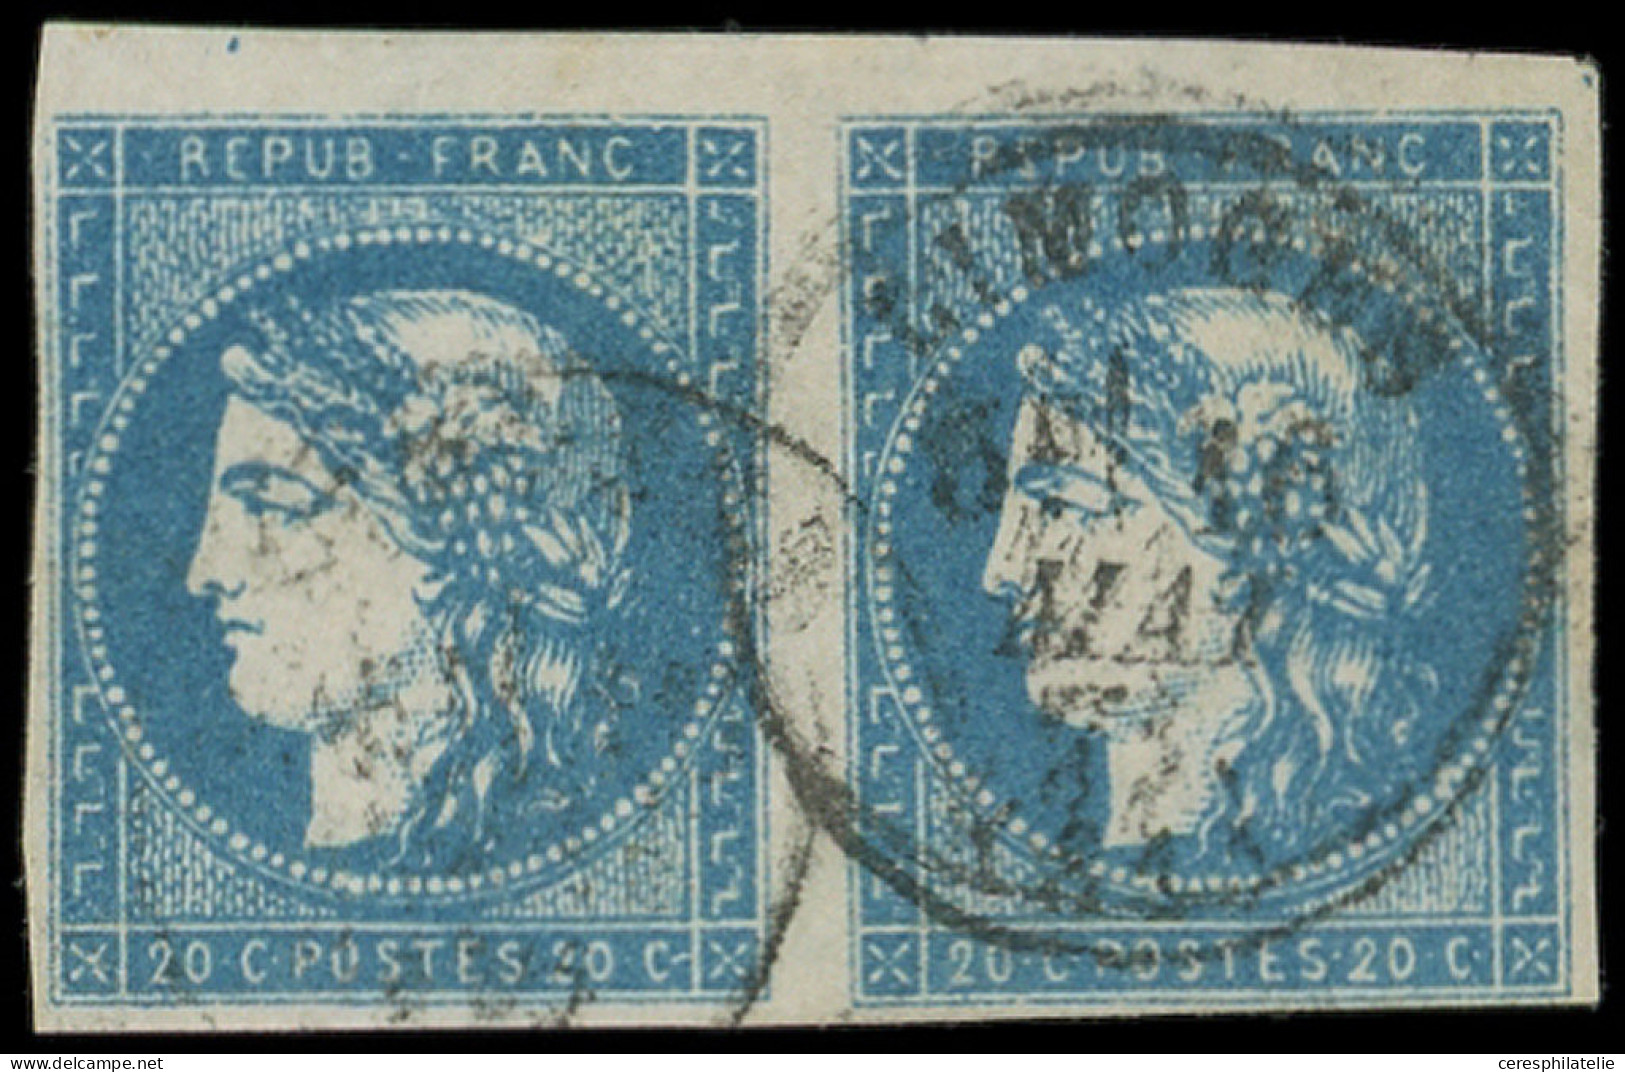 EMISSION DE BORDEAUX - 44Ba 20c. Bleu Foncé, T I R II, PAIRE Obl. Càd LIMOGES 16/5/71, Superbe - 1870 Bordeaux Printing